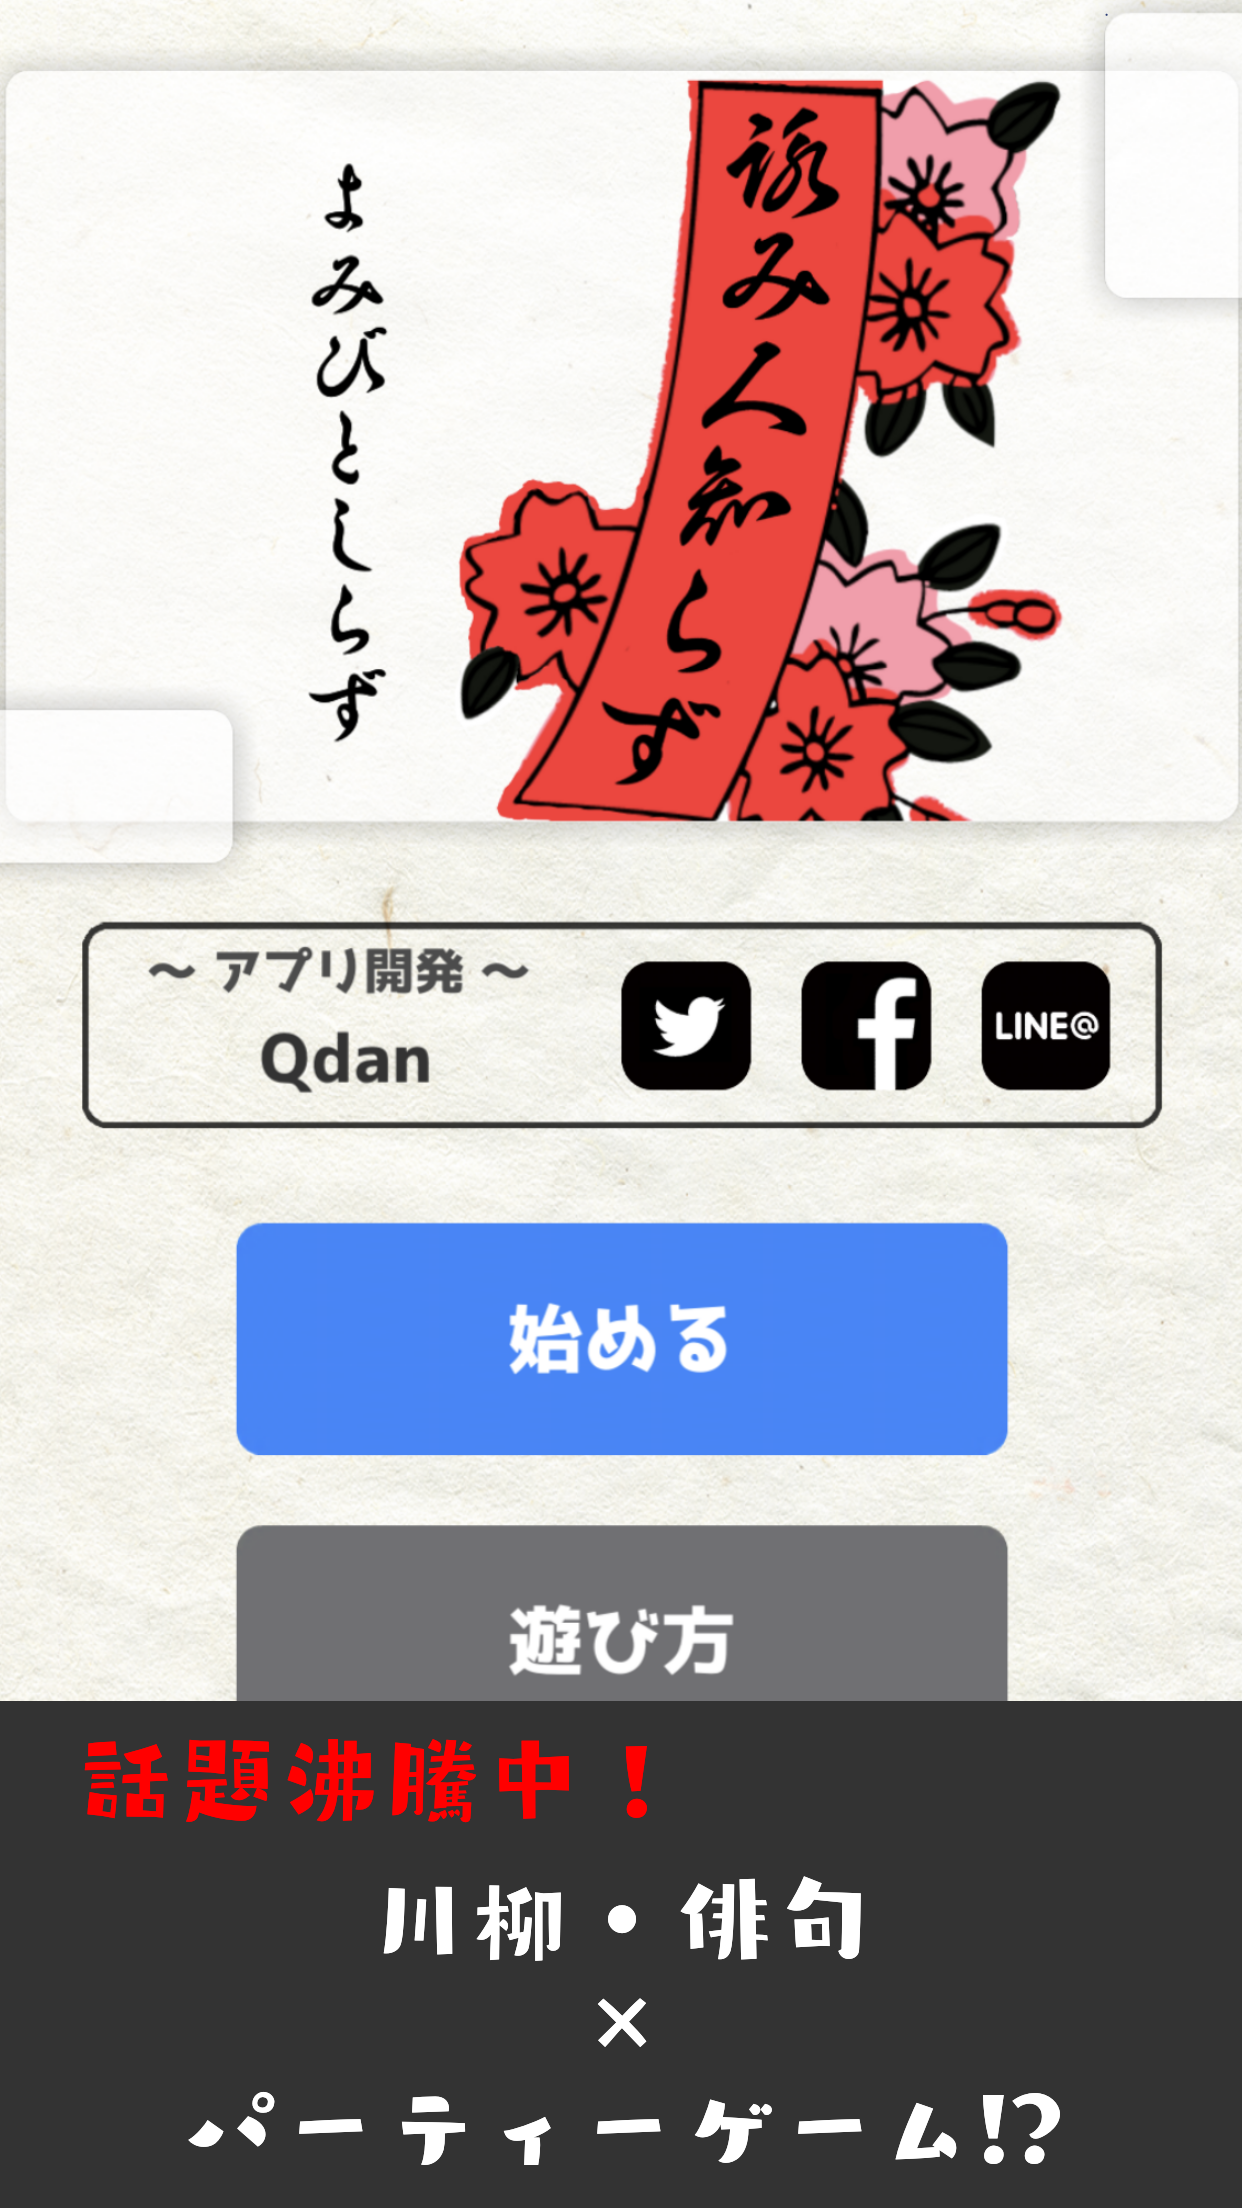 Screenshot 1 of Ninguém sabe quem escreveu -575, haiku, senryu, party game- 1.0.8